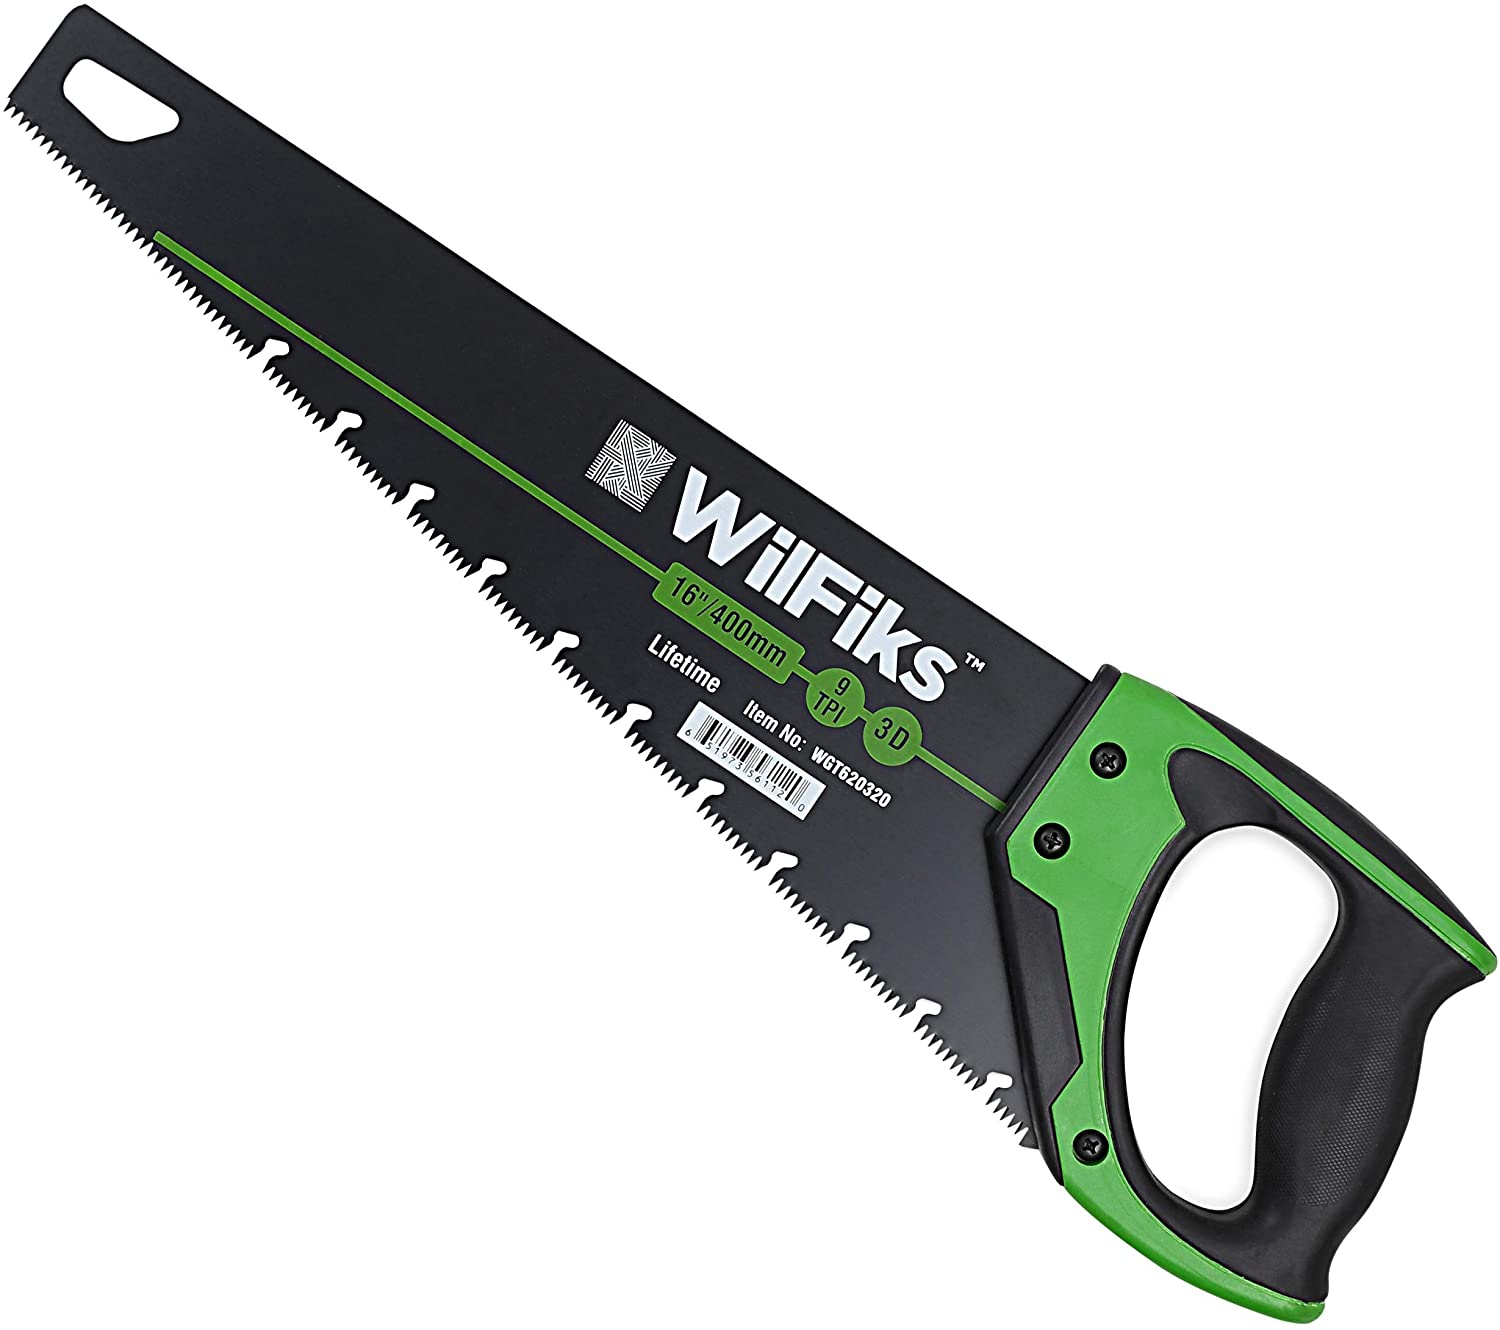 WilFiks 16-Inch Pro Hand Saw